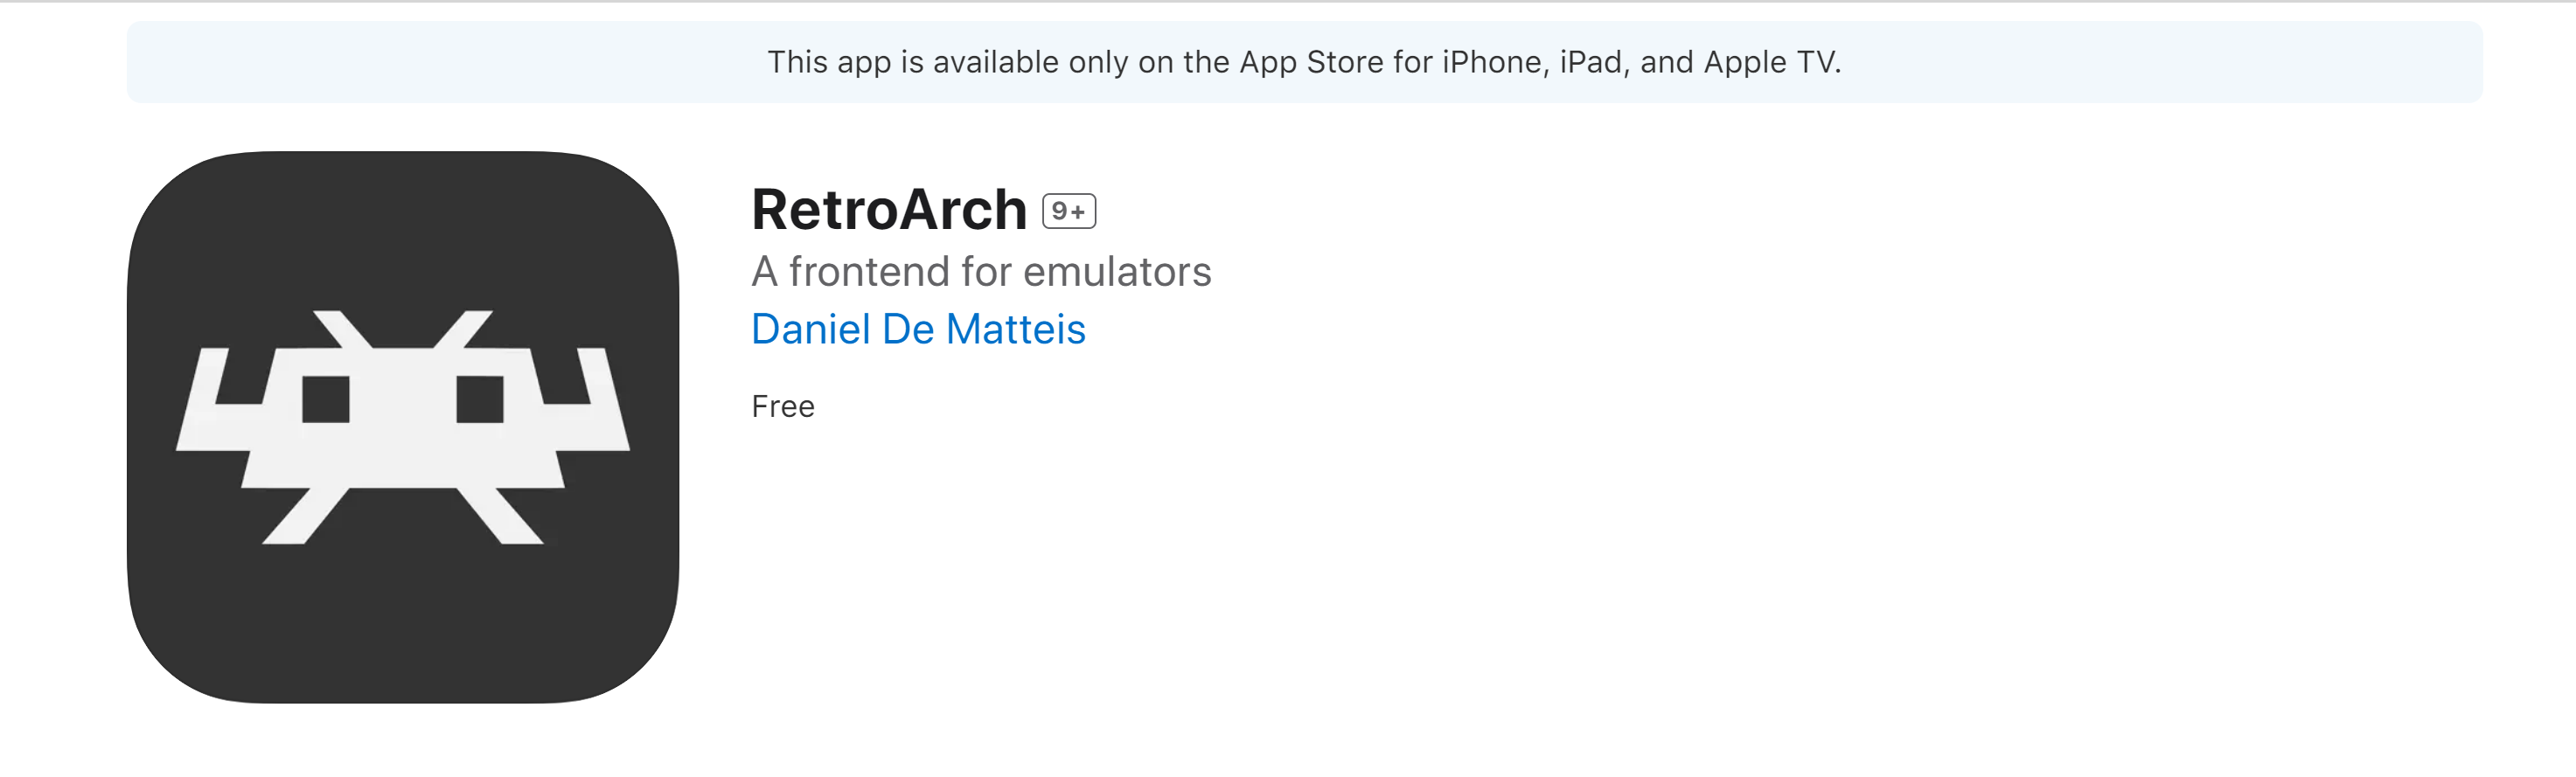 La emulación definitiva llega oficialmente a iOS de la mano de RetroArch